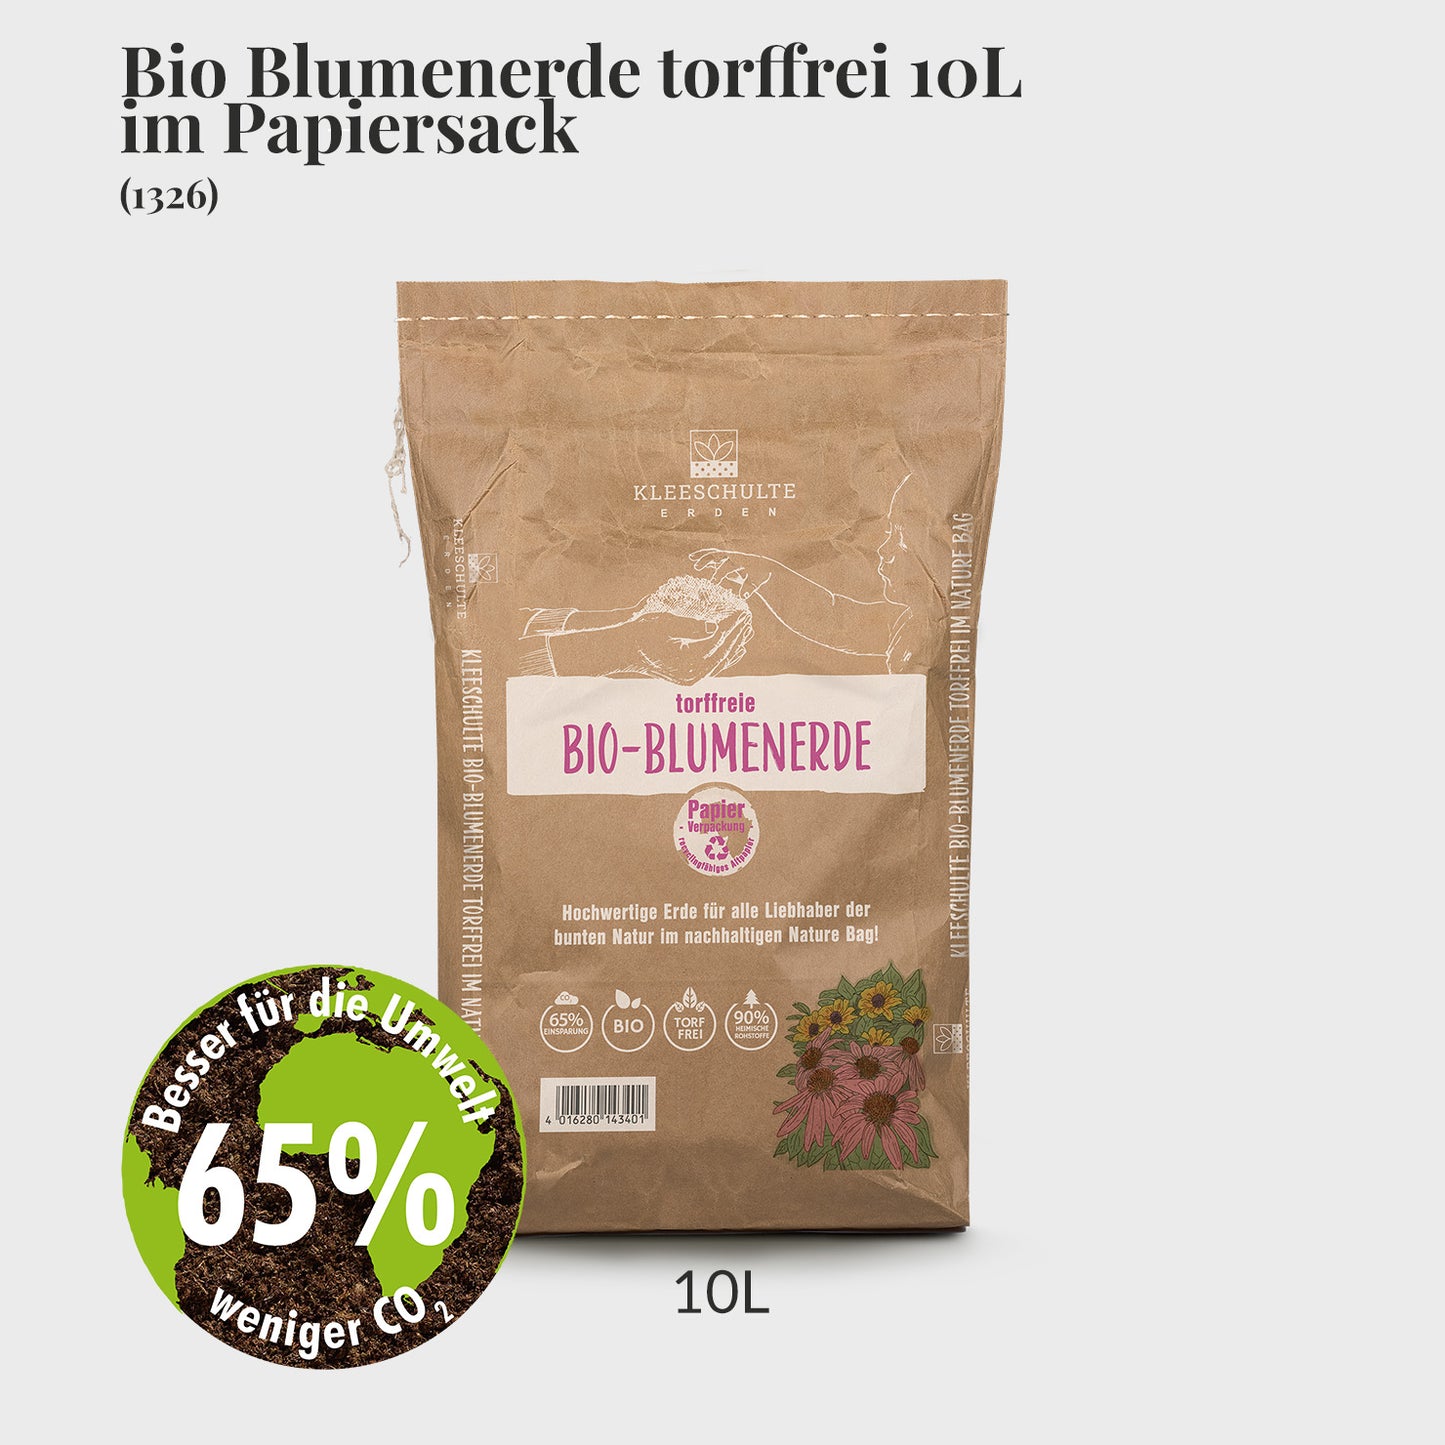 Bio Blumenerde Torffrei 10L im Papiersack